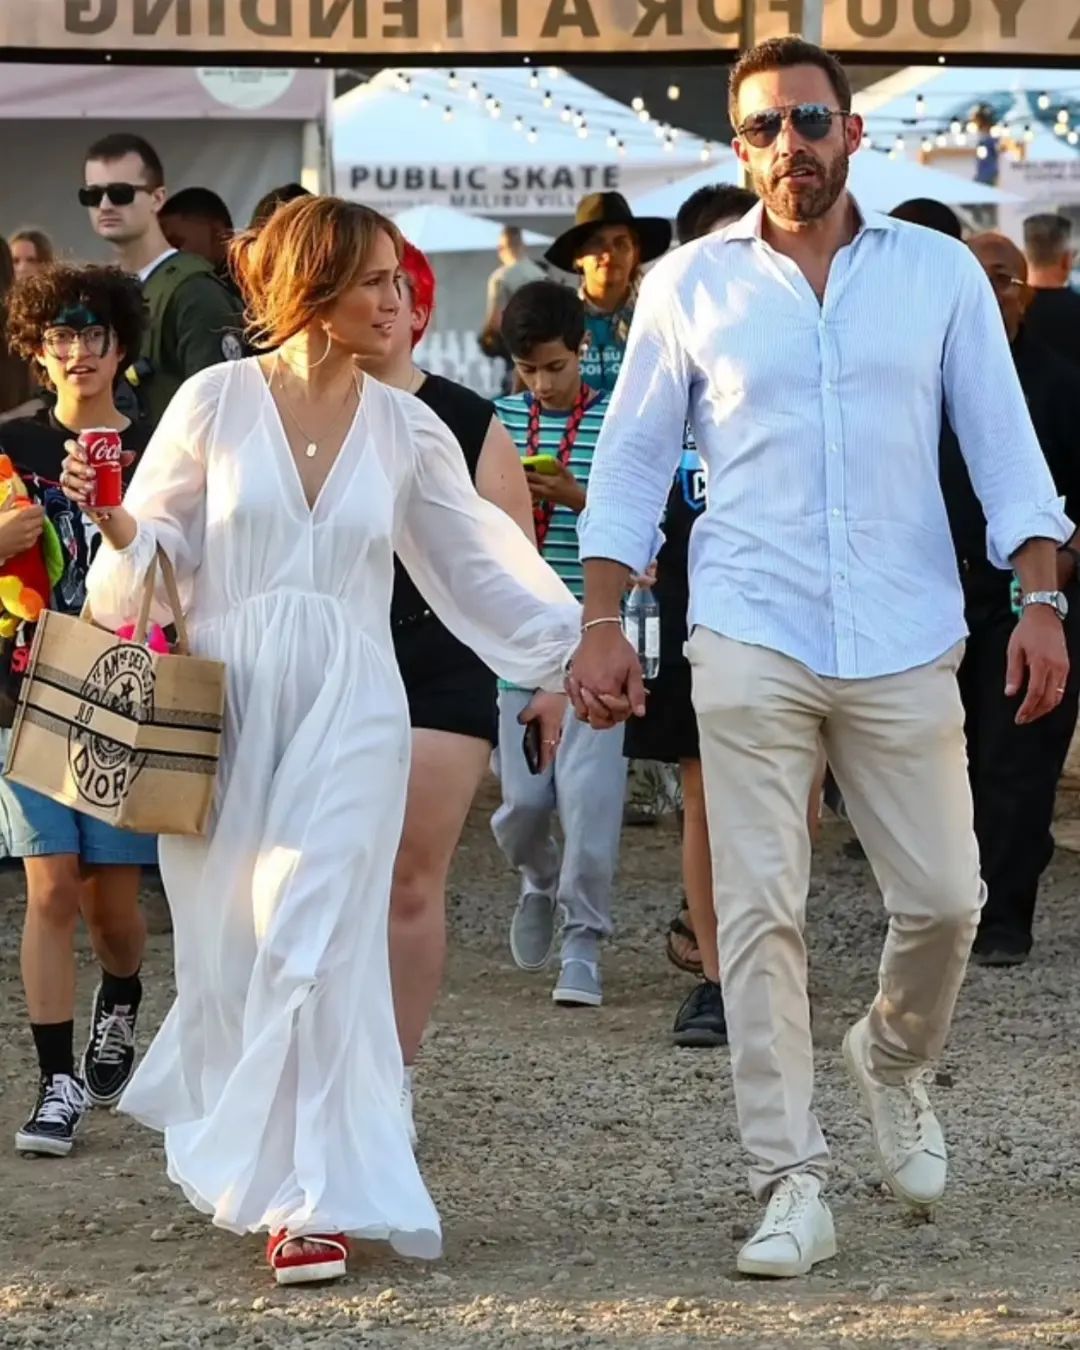 Самый нелепый образ: Дженнифер Лопес в белом полупрозрачном платье сходила с детьми и мужем на ярмарку